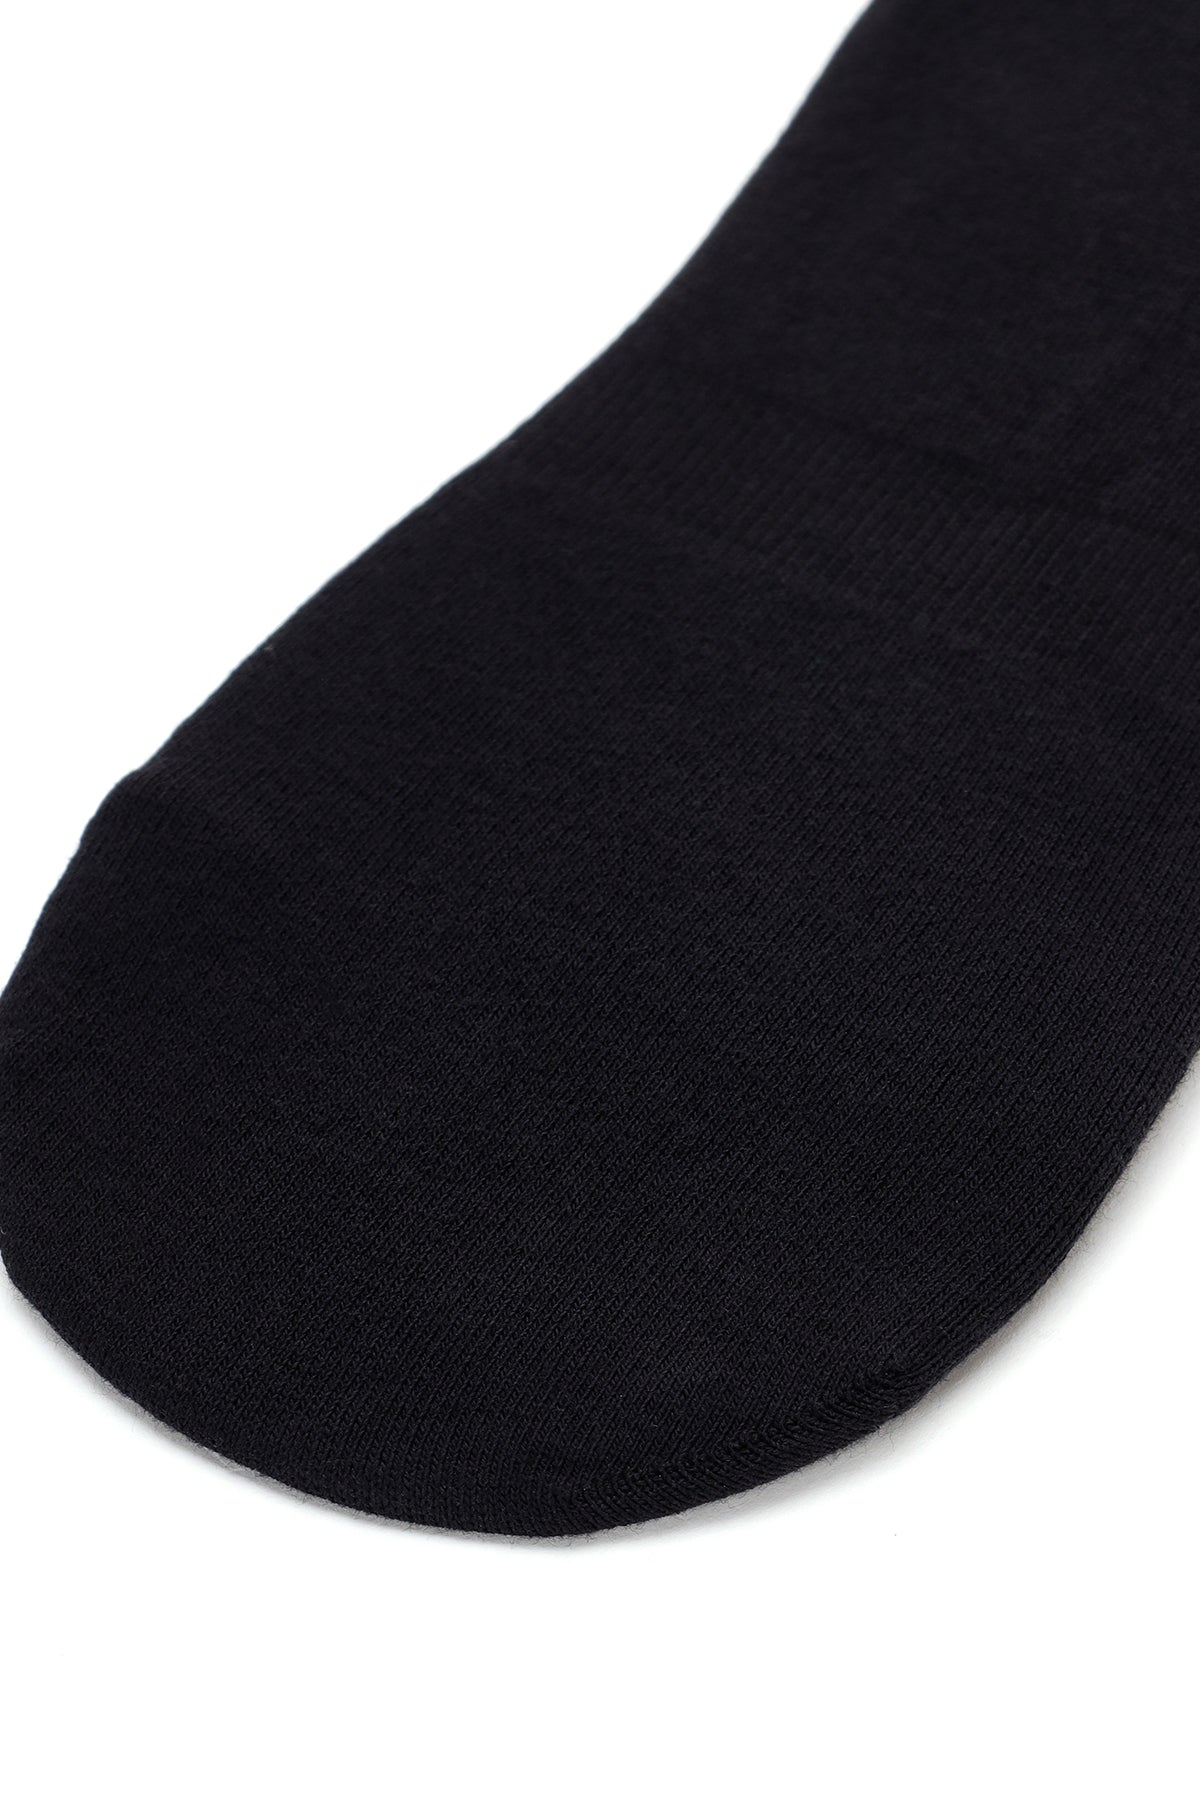 Erkek Siyah Pamuklu Patik Çorap